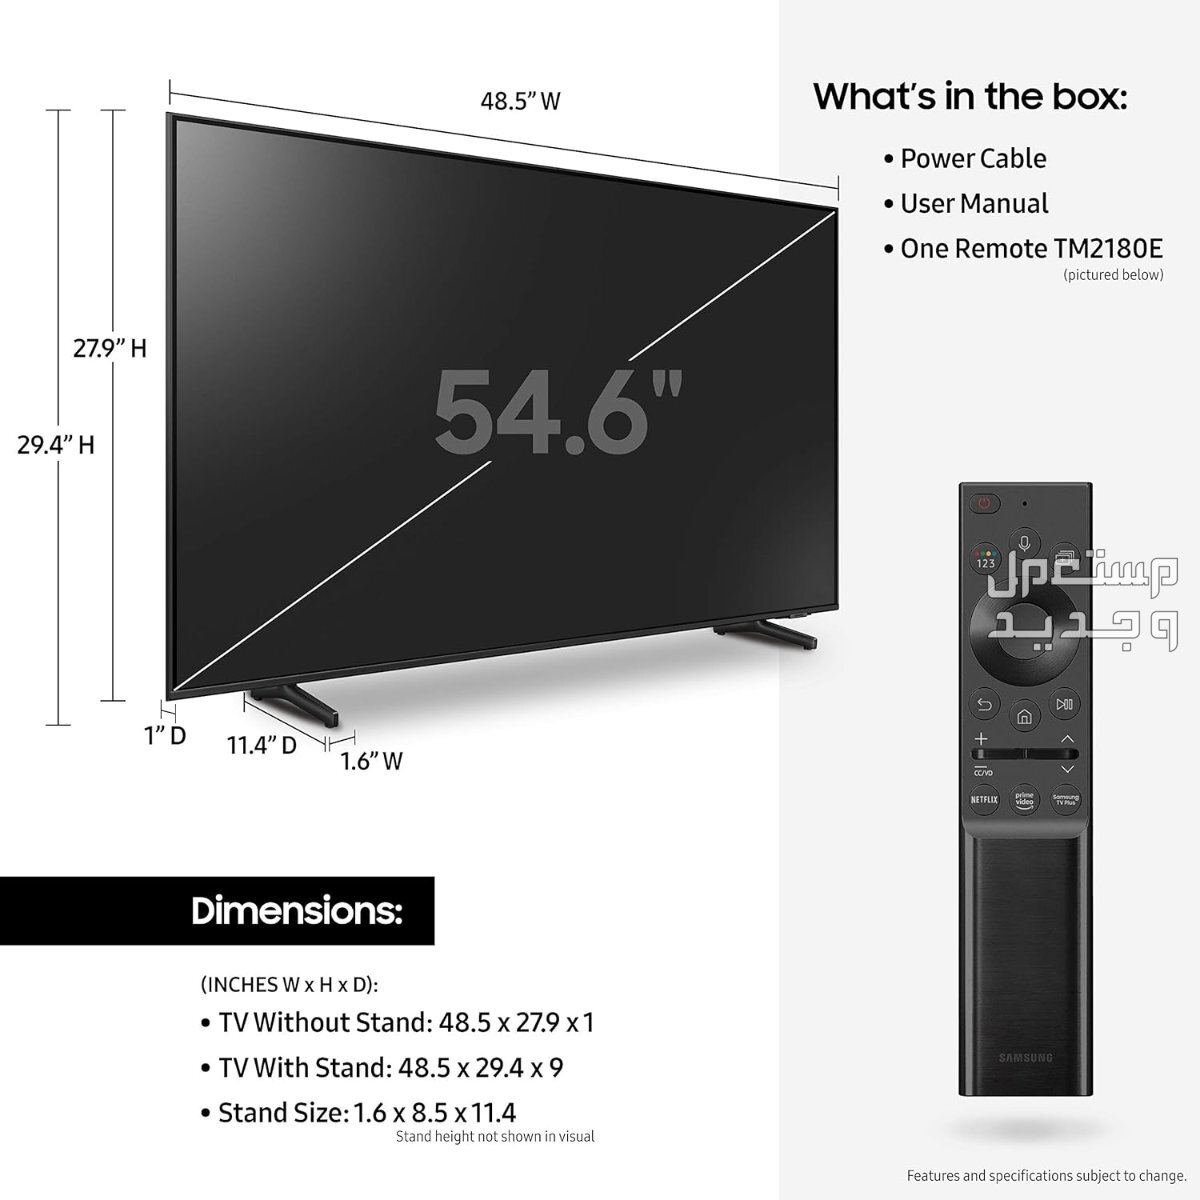 انواع تلفزيون 55 بوصة بالمواصفات والصور والأسعار في الإمارات العربية المتحدة تلفزيون 55 بوصة ماركة سامسونج موديل QA55Q60ABUXUM